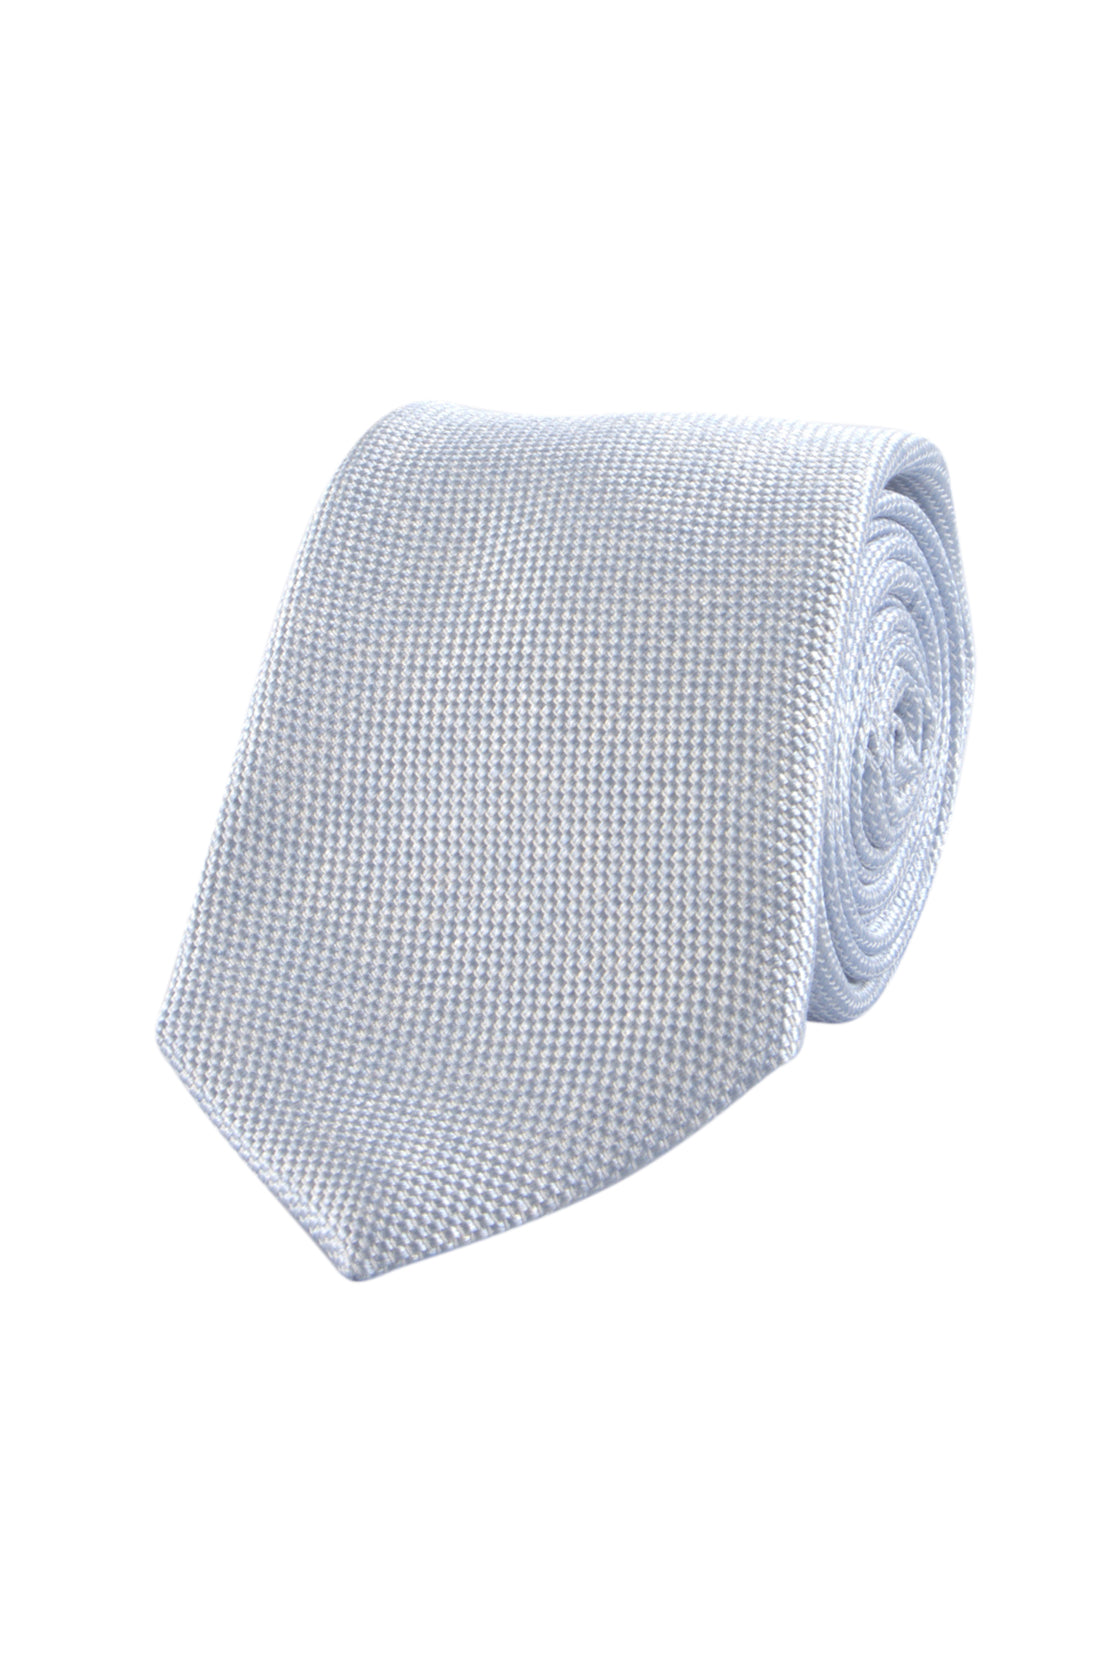 Hemley 7.5cm Silk/Cotton Tie Blue 1230012-3/1